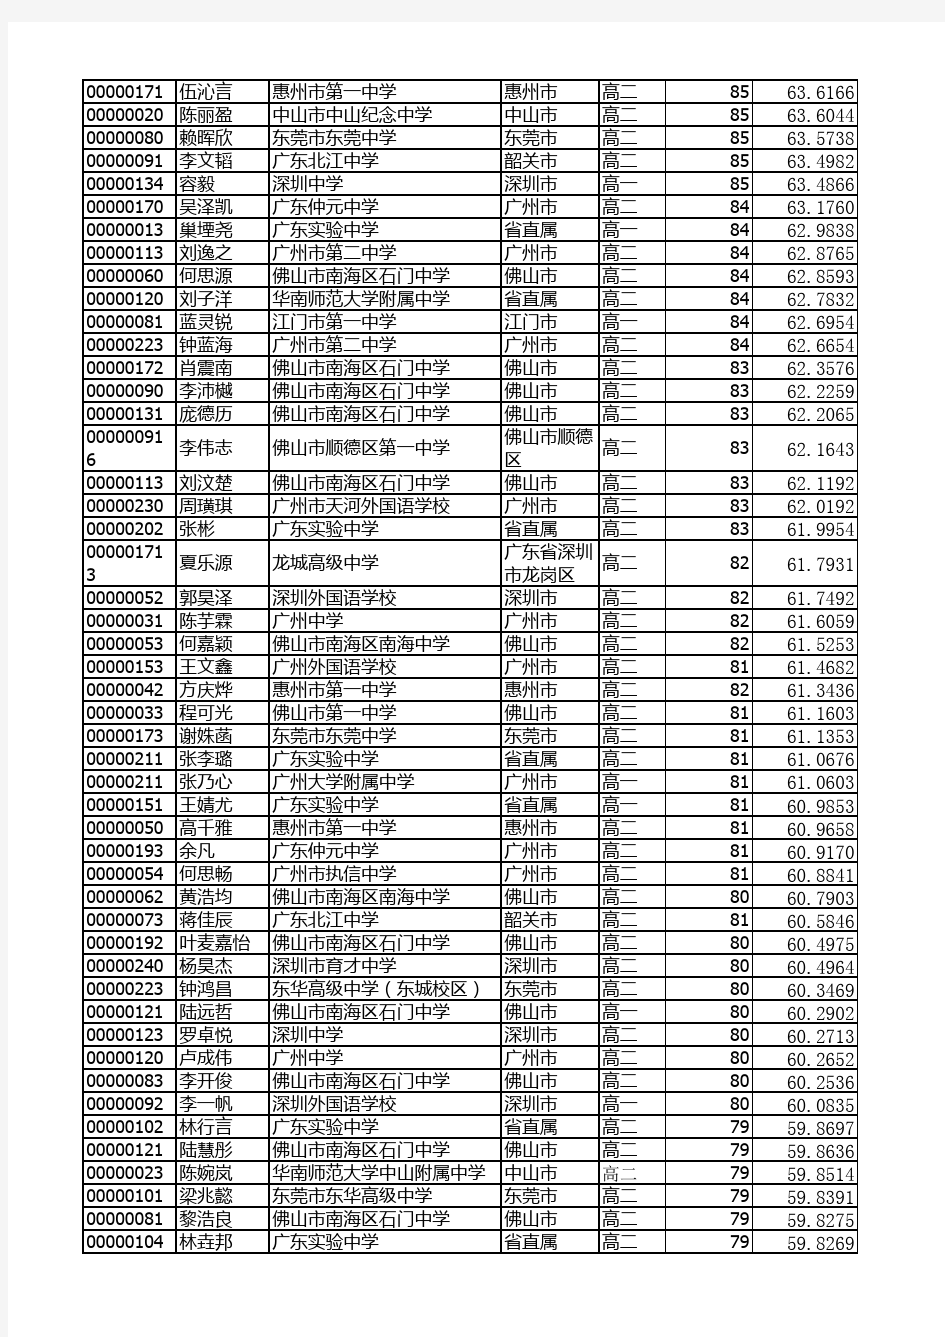 2019年全国中学生生物学联赛广东赛区成绩表(公布) (1)